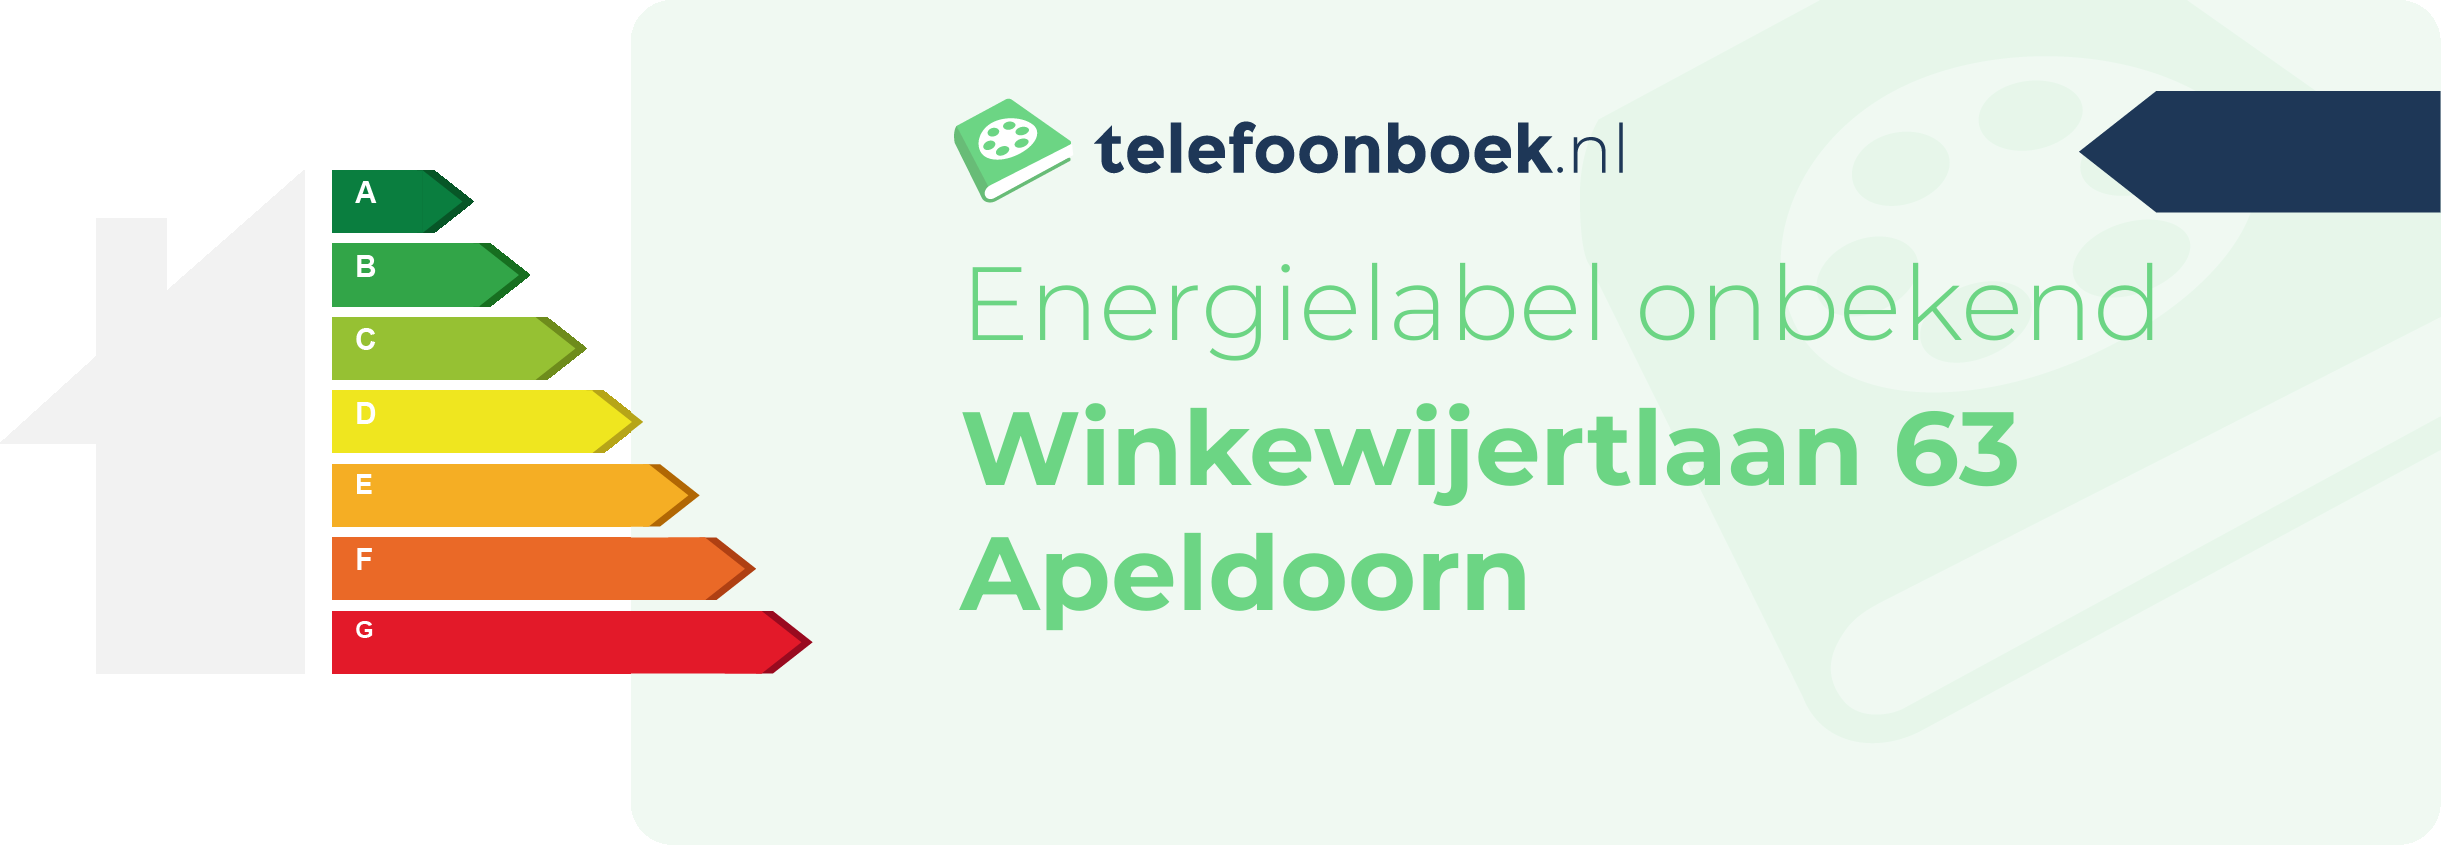 Energielabel Winkewijertlaan 63 Apeldoorn